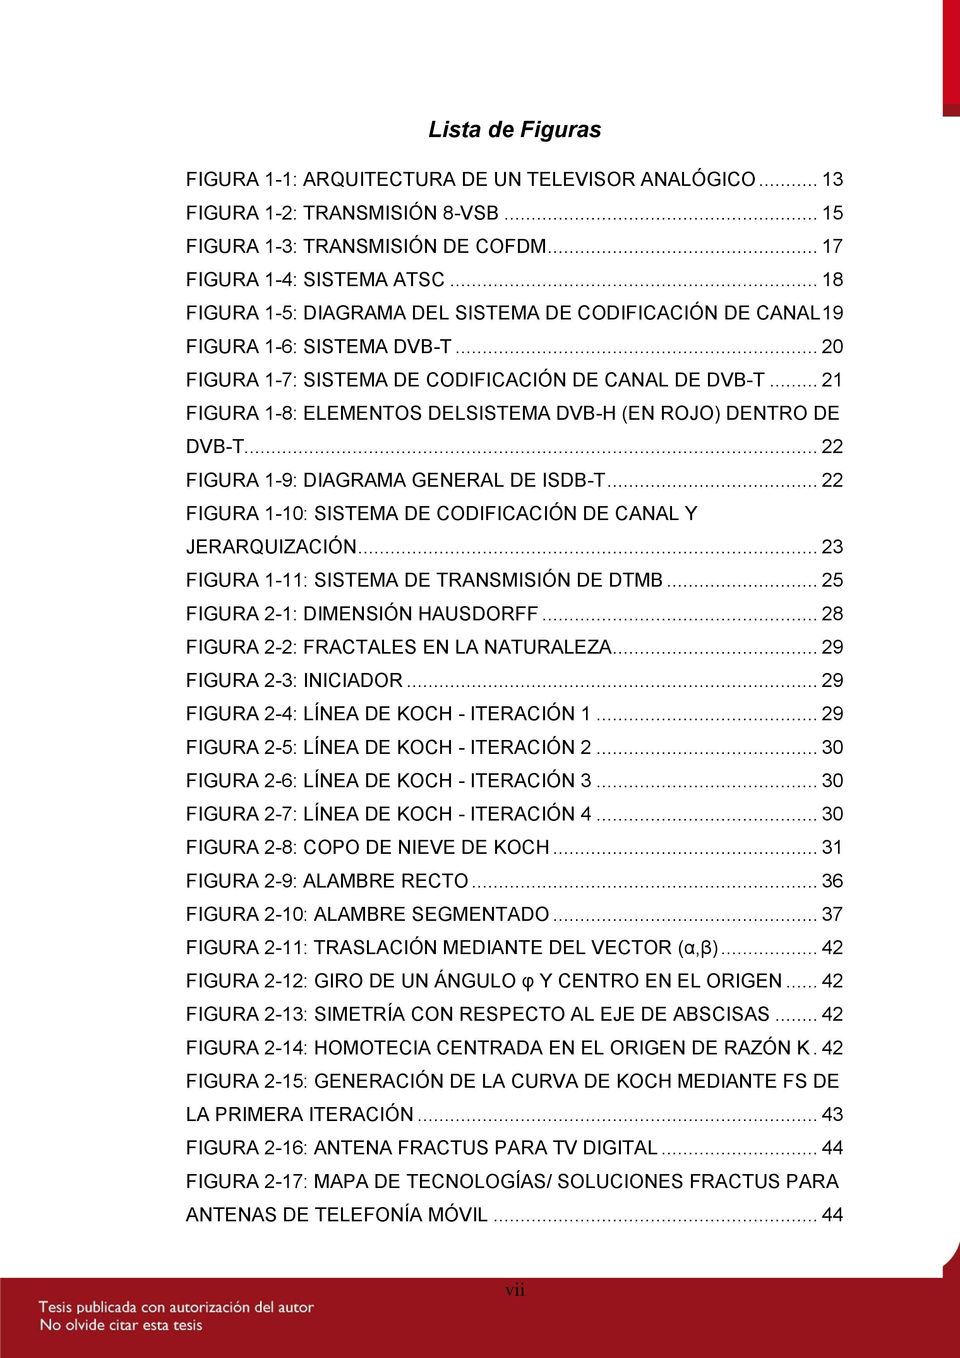 .. 21 FIGURA 1-8: ELEMENTOS DELSISTEMA DVB-H (EN ROJO) DENTRO DE DVB-T... 22 FIGURA 1-9: DIAGRAMA GENERAL DE ISDB-T... 22 FIGURA 1-10: SISTEMA DE CODIFICACIÓN DE CANAL Y JERARQUIZACIÓN.